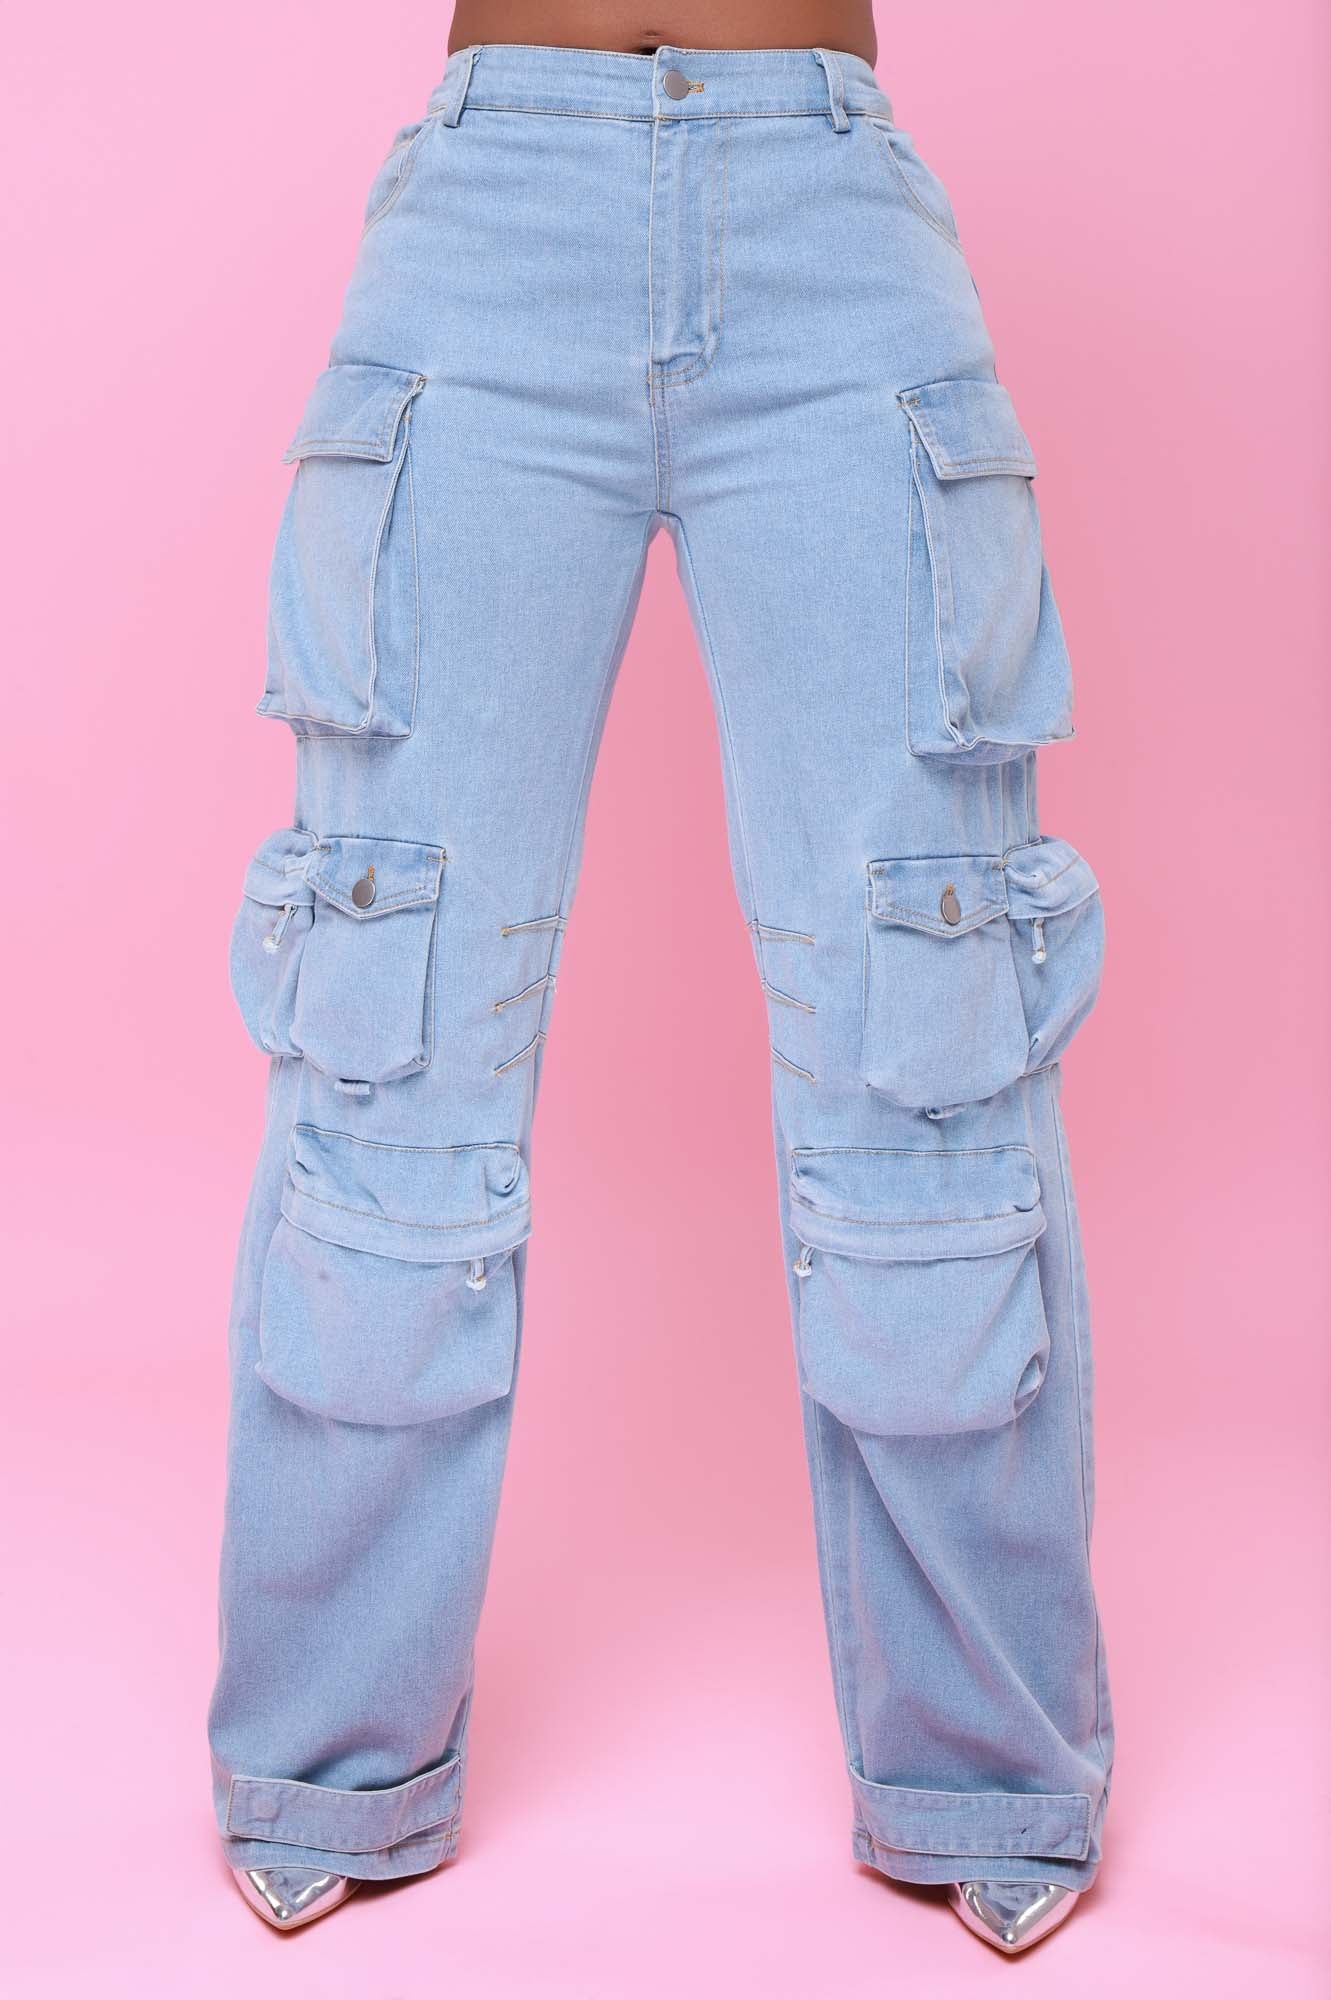 Women trousers jeans multi-pocket